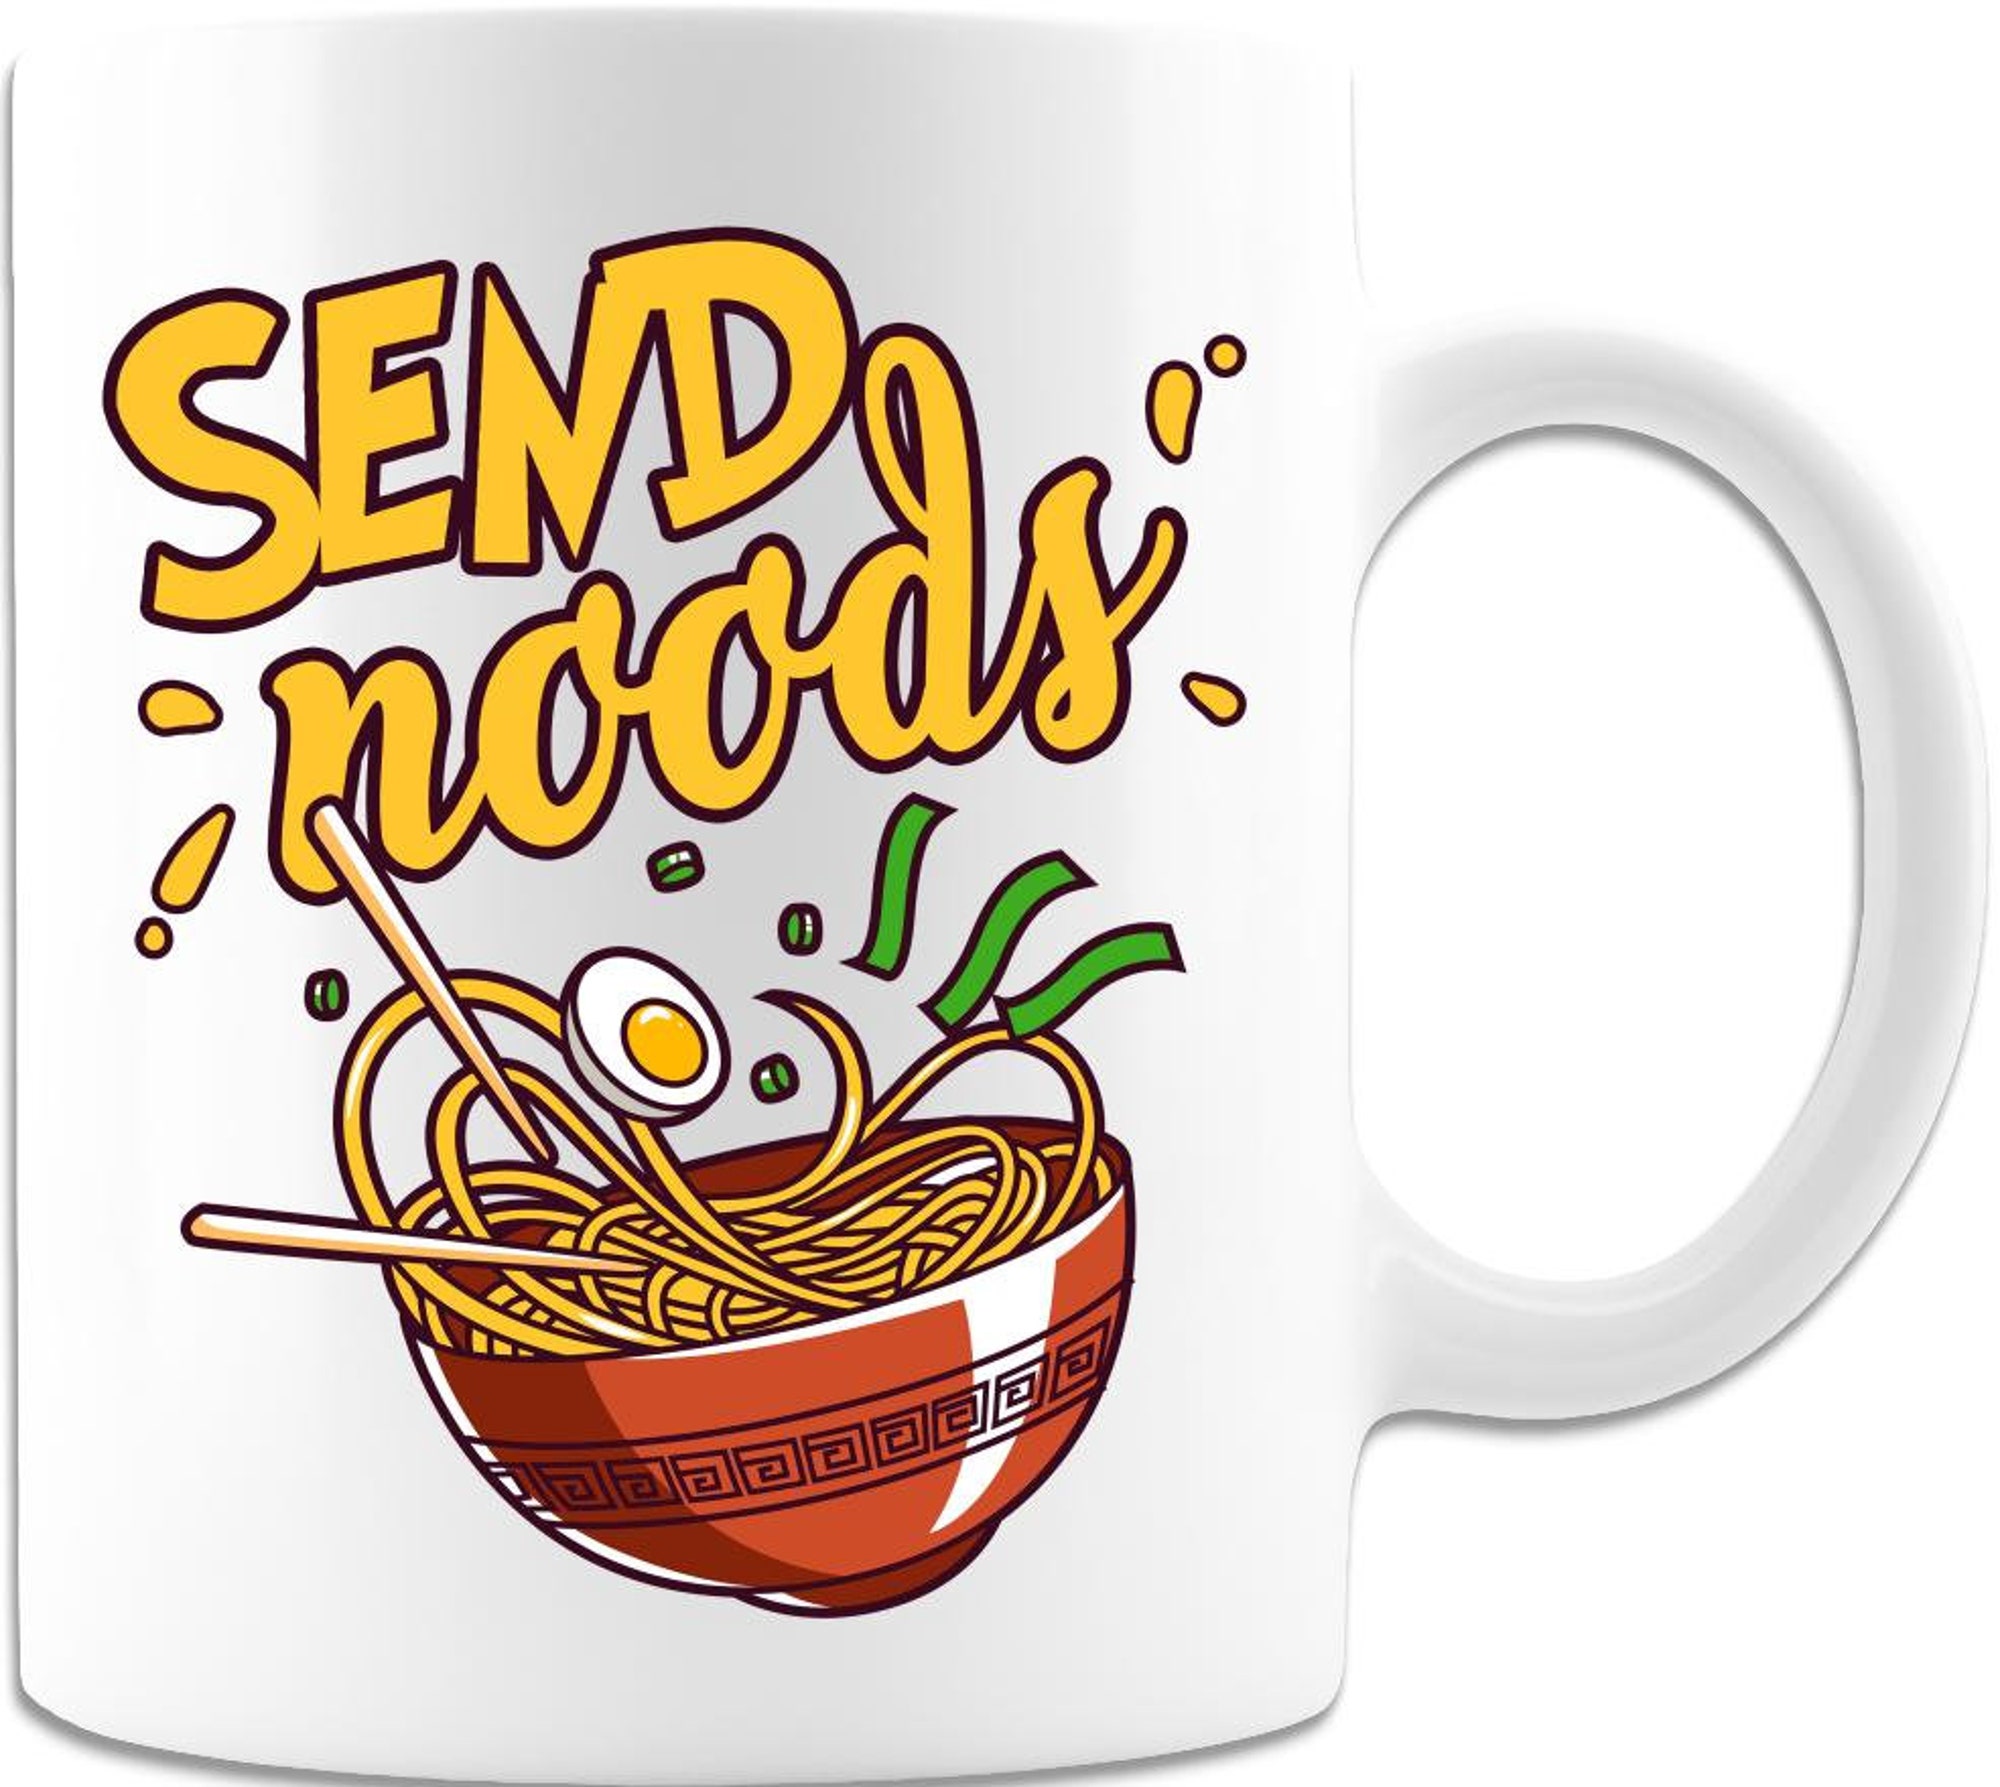 Send Noodles White Coffee Mug